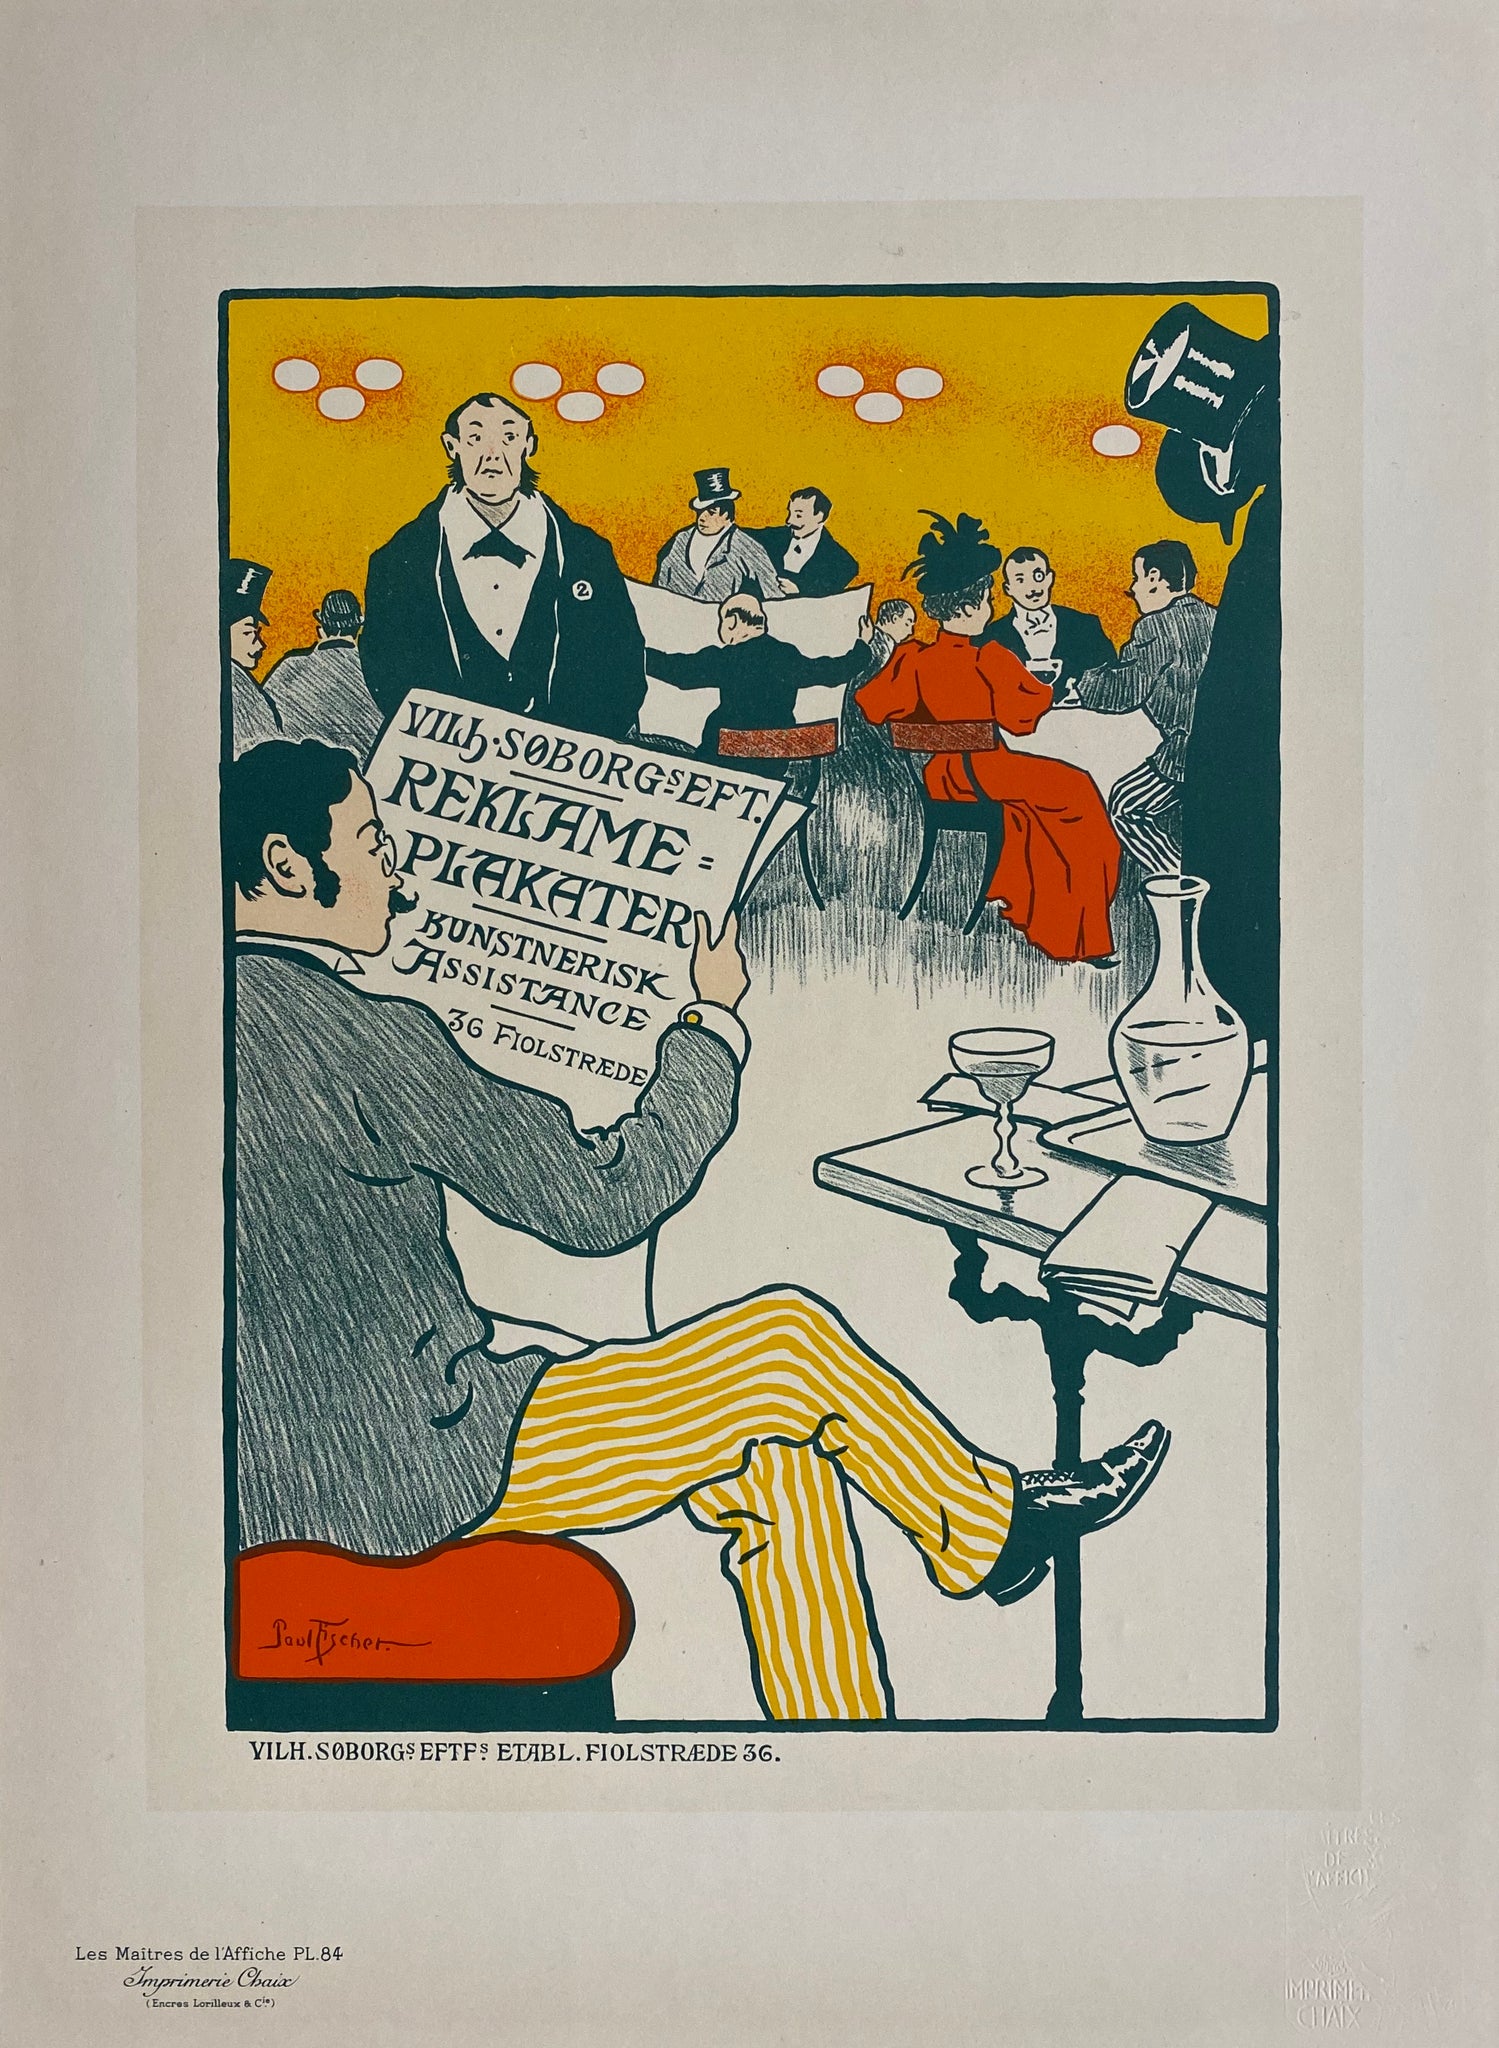 Maitre de l'affiche planche 84 - Reklame Plakater - Paul Fisher 1897